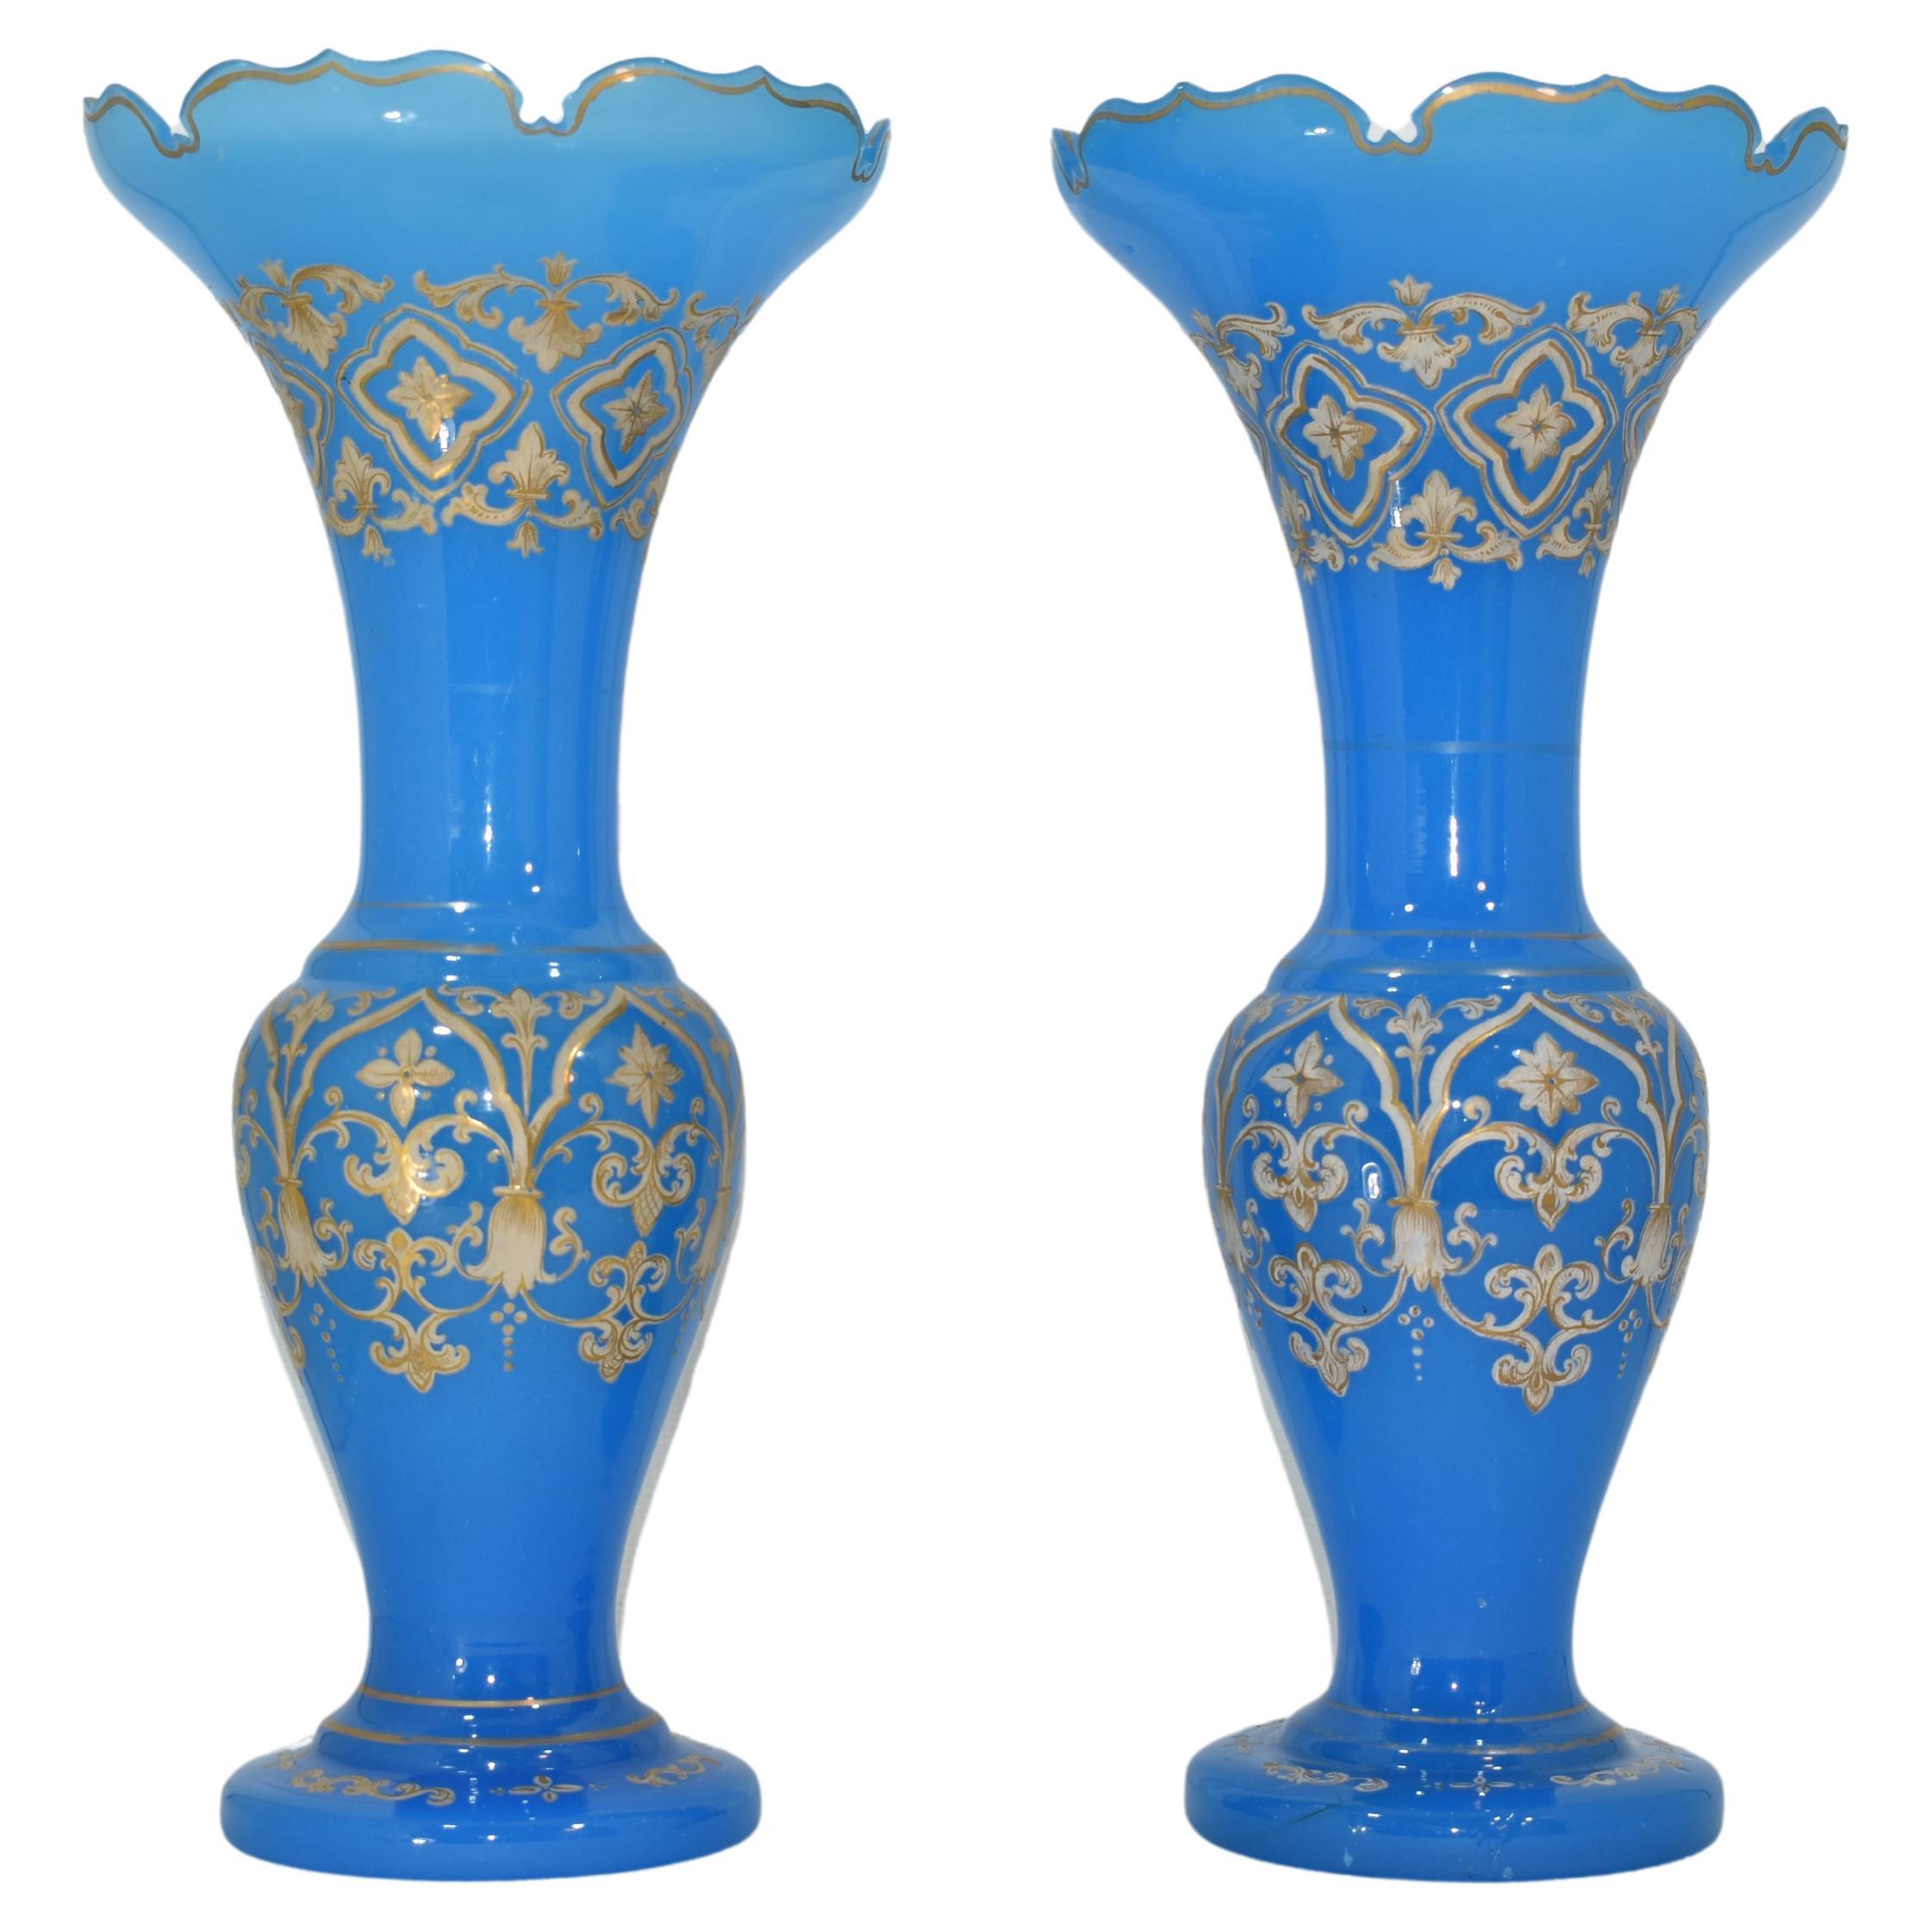 Exquise paire de vases en verre opalin émaillé bleu albâtre
Bohemia, 19ème siècle
Beau corps circulaire décoré de part en part d'émaux dorés et de rehauts de dorure.